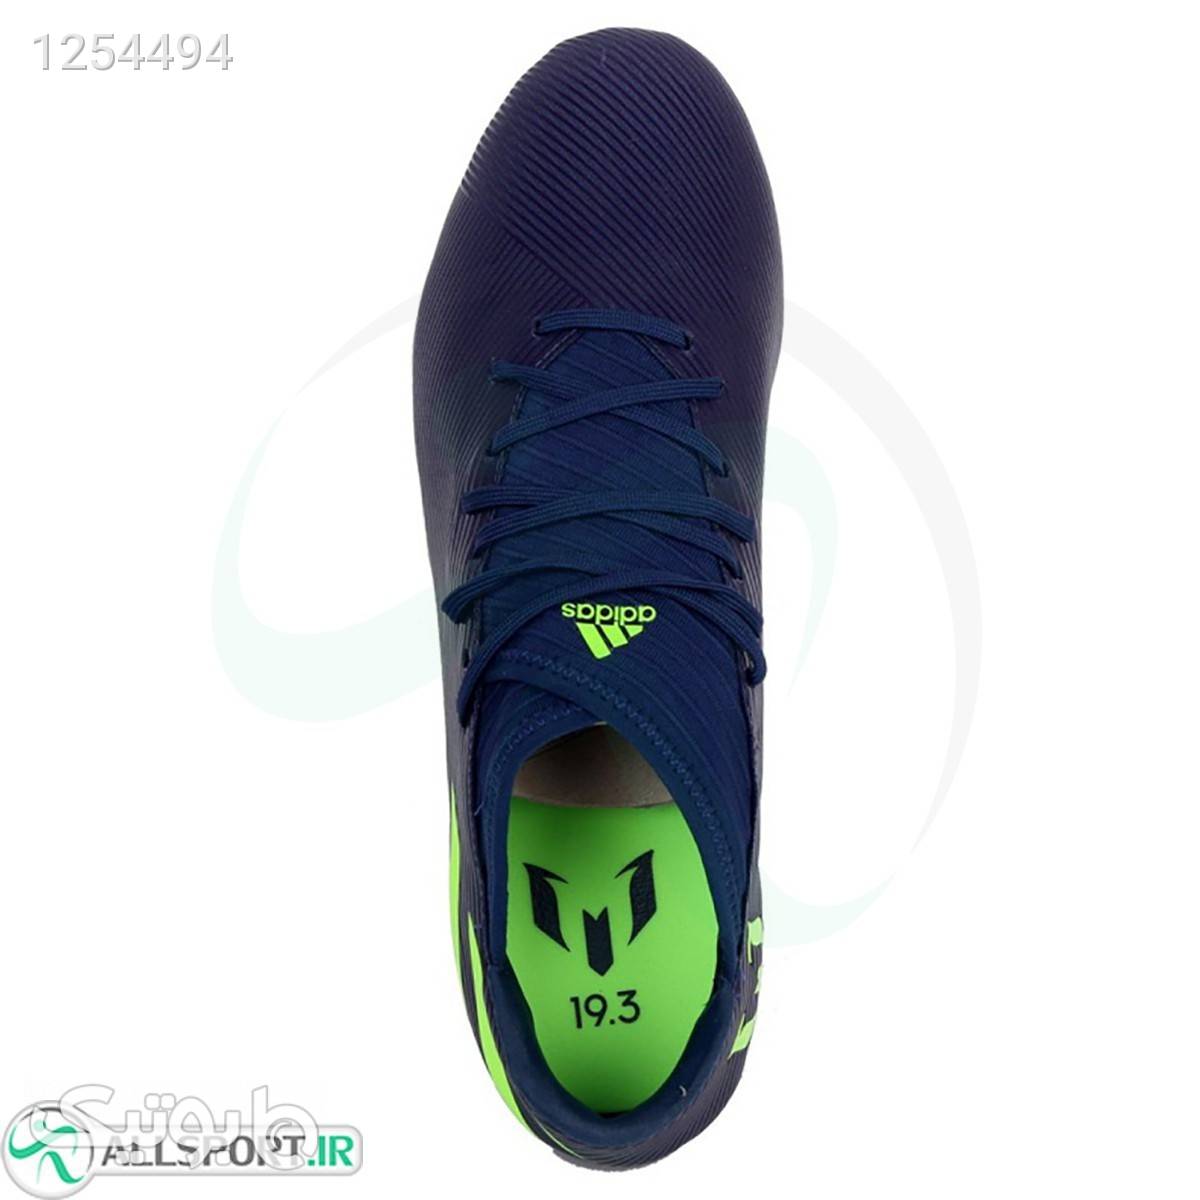 کفش فوتبال آدیداس نمزیز Adidas Nemeziz Messi M EF1806 مشکی از فروشگاه فروشگاه اسپرت | بوتیک